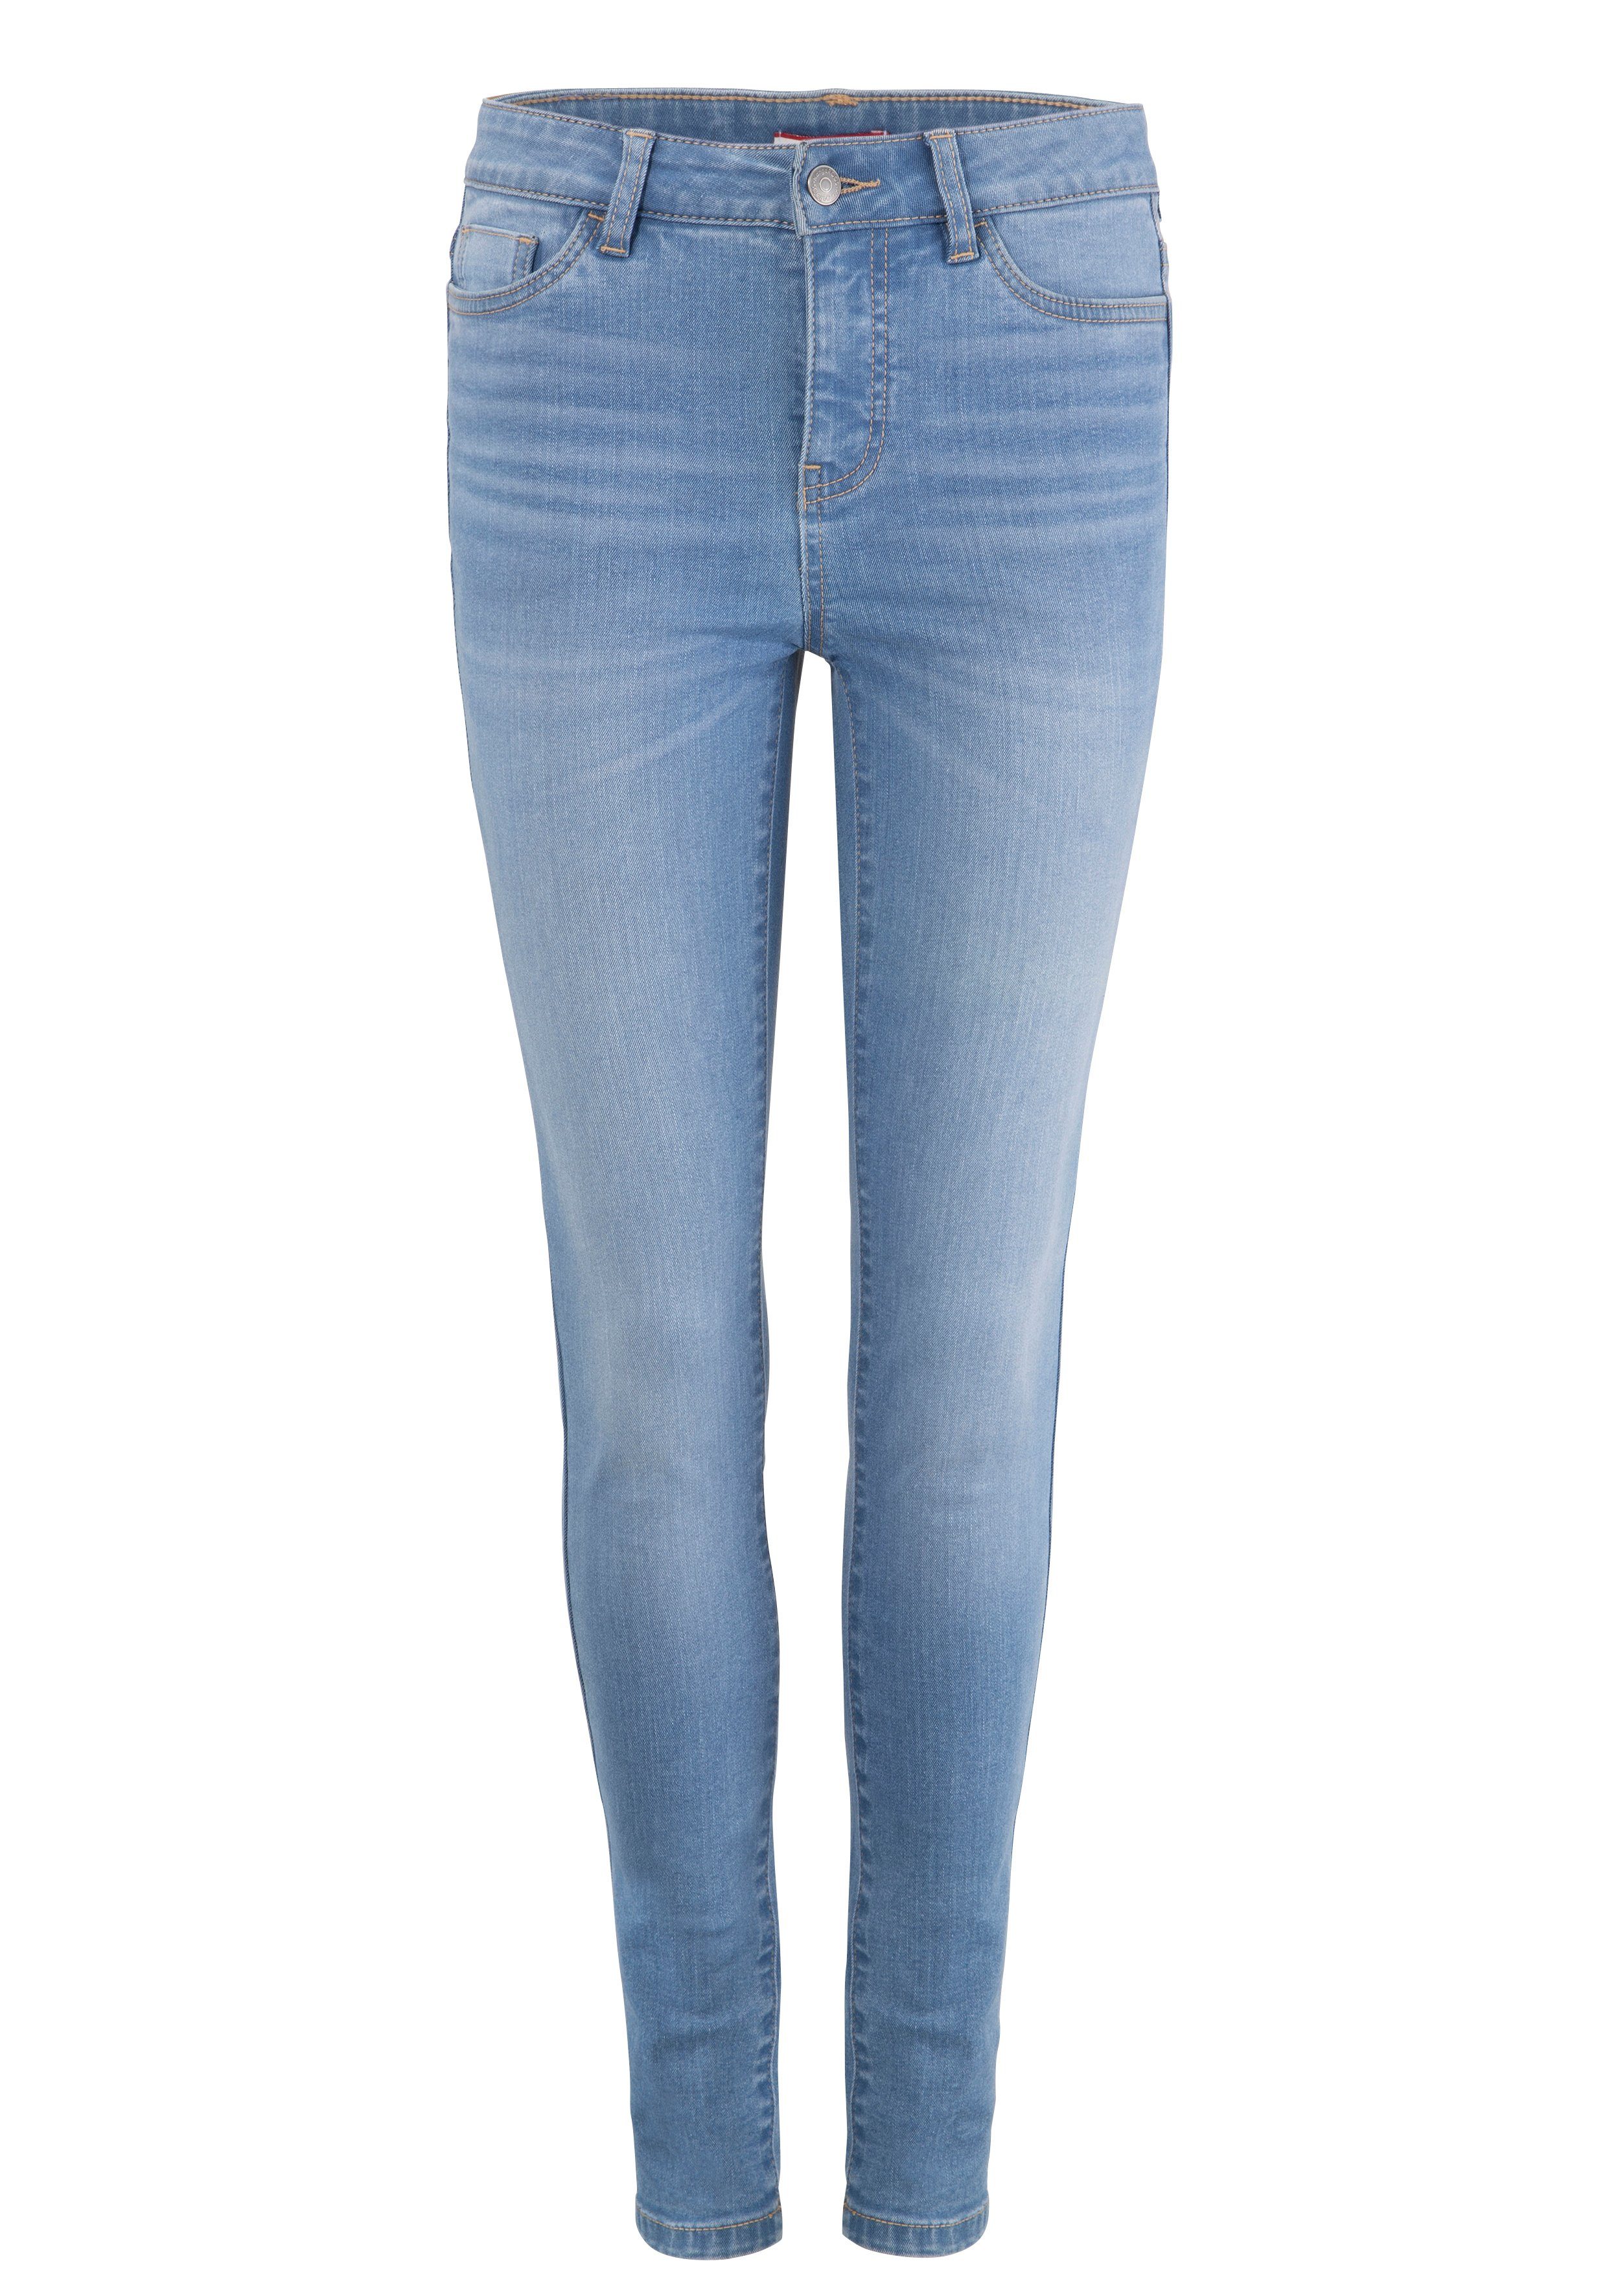 KangaROOS light-blue-used RISE SKINNY HIGH 5-Pocket-Jeans used-Effekt mit SUPER